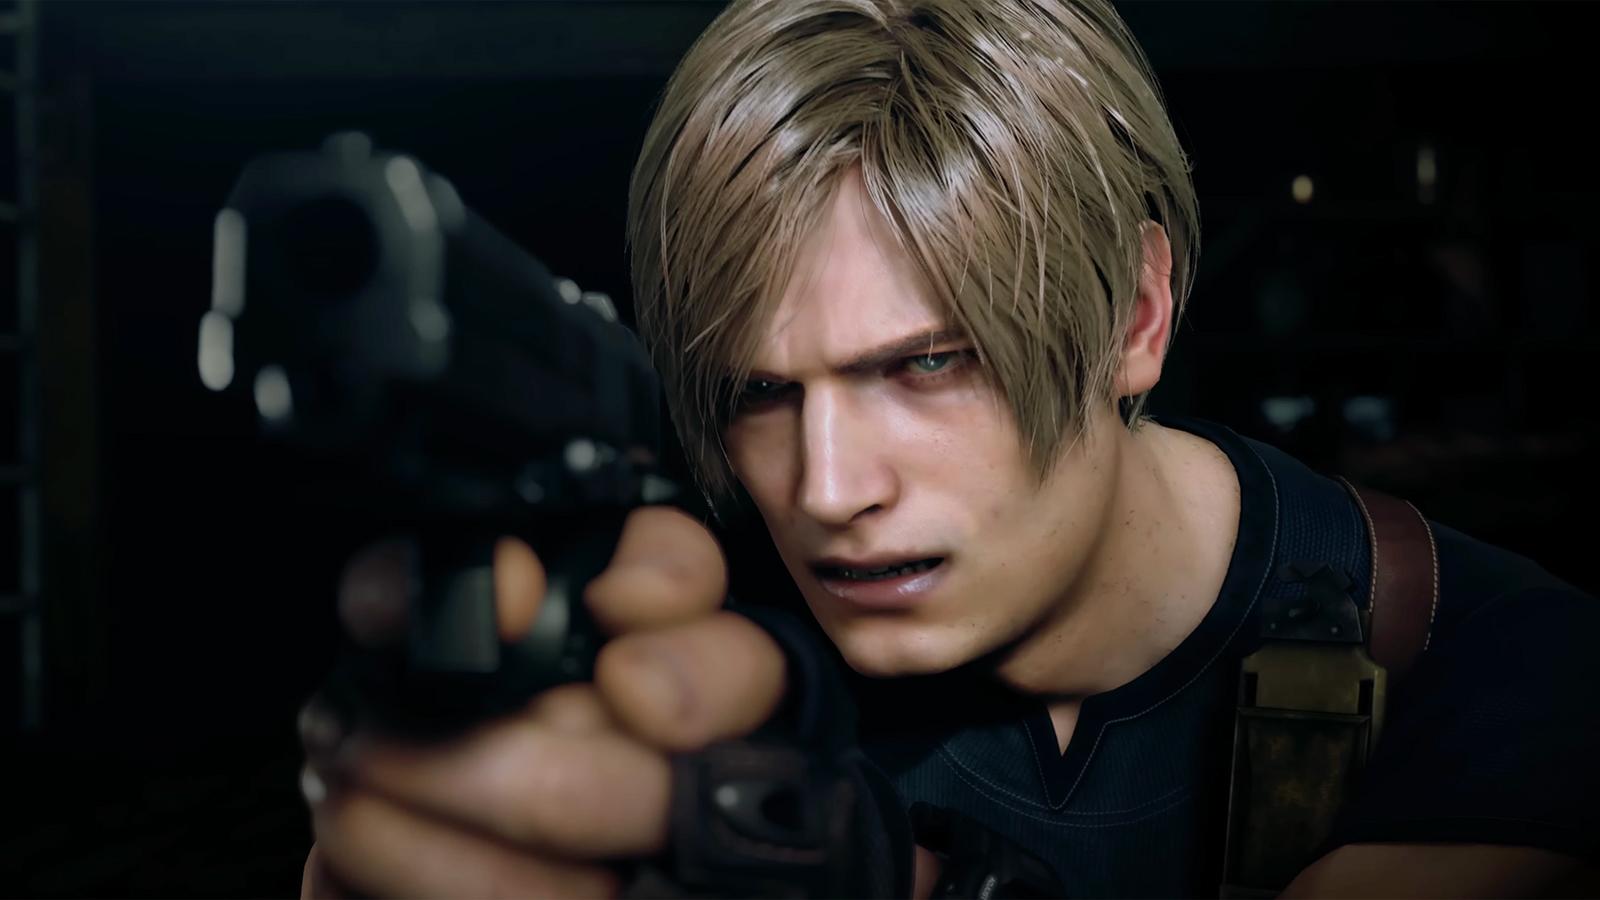 Resident Evil 4 Remake Mercenaries Krauser S++ Guide - GameRevolution